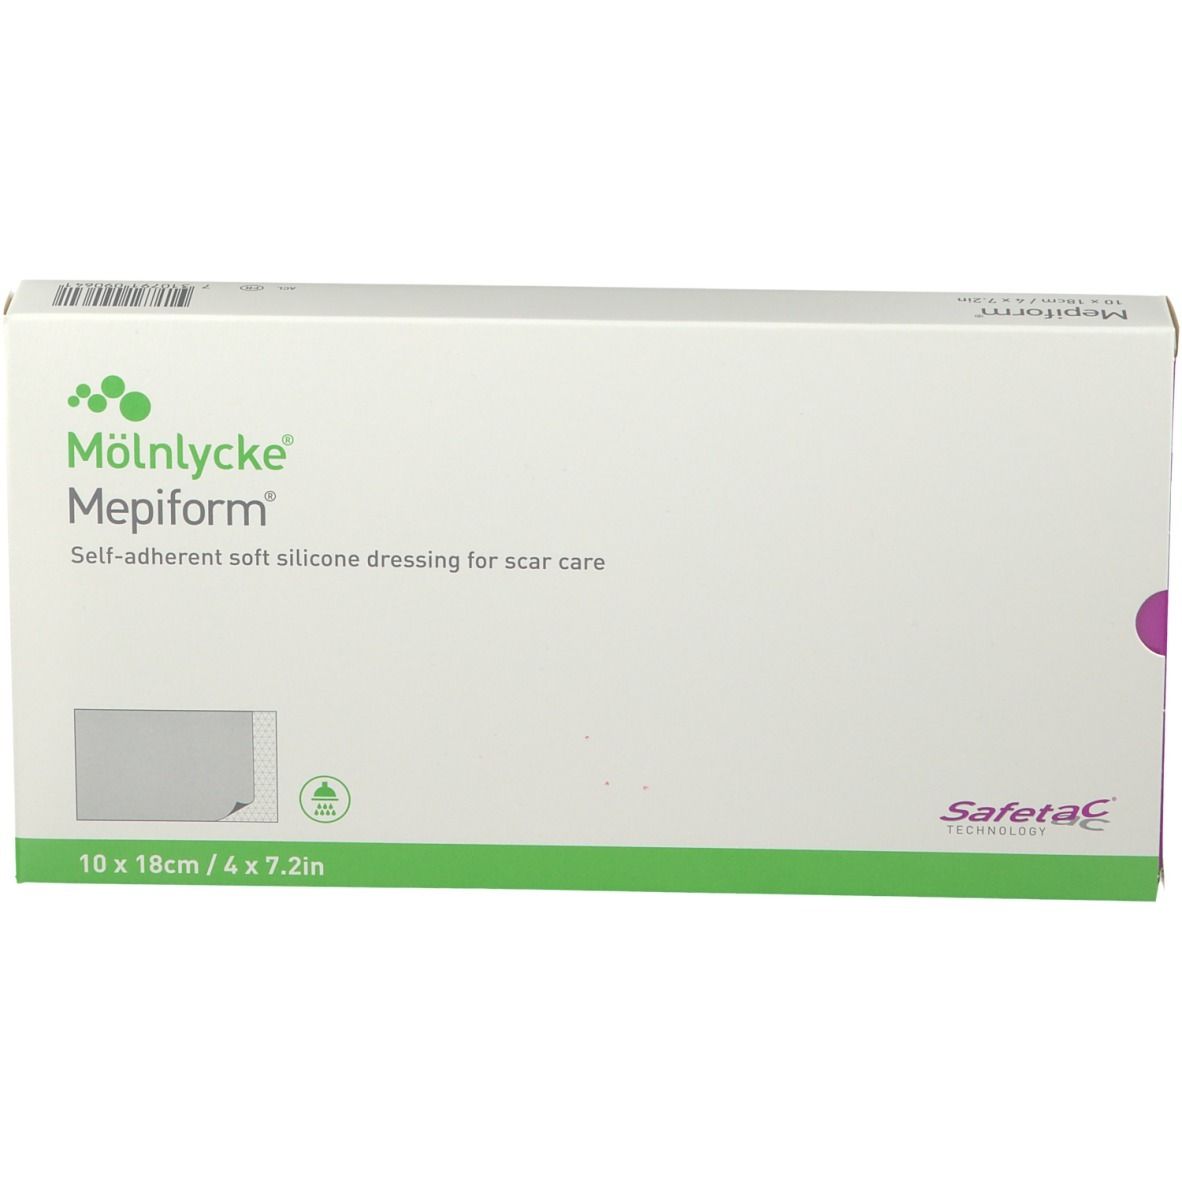 Mölnlycke® Mepiform® Medicazione Autoaderente 10 x 18 cm